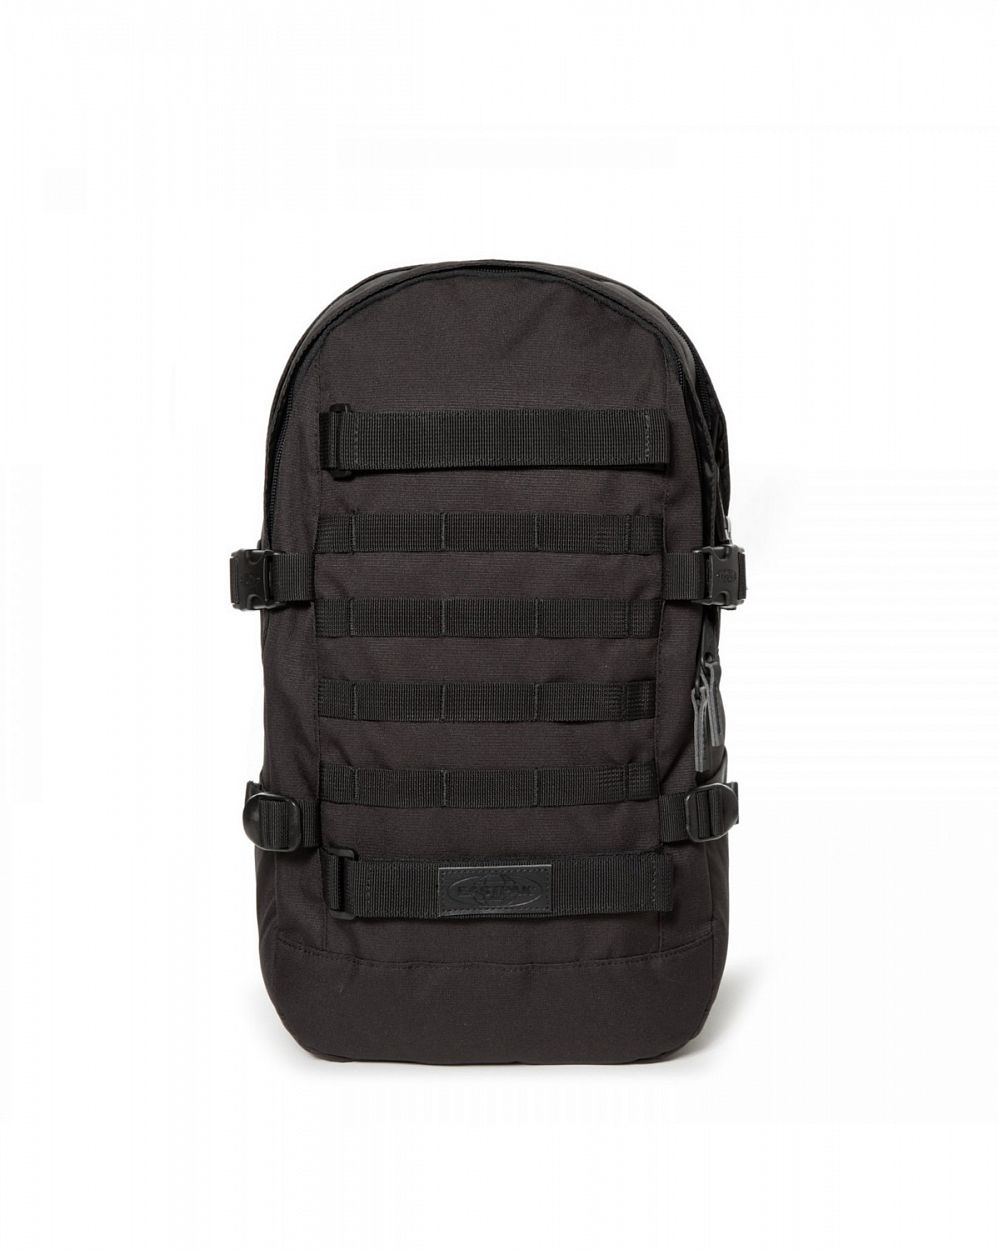 Рюкзак износостойкий для 15 ноутбука Eastpak Floid Tact Black19 отзывы